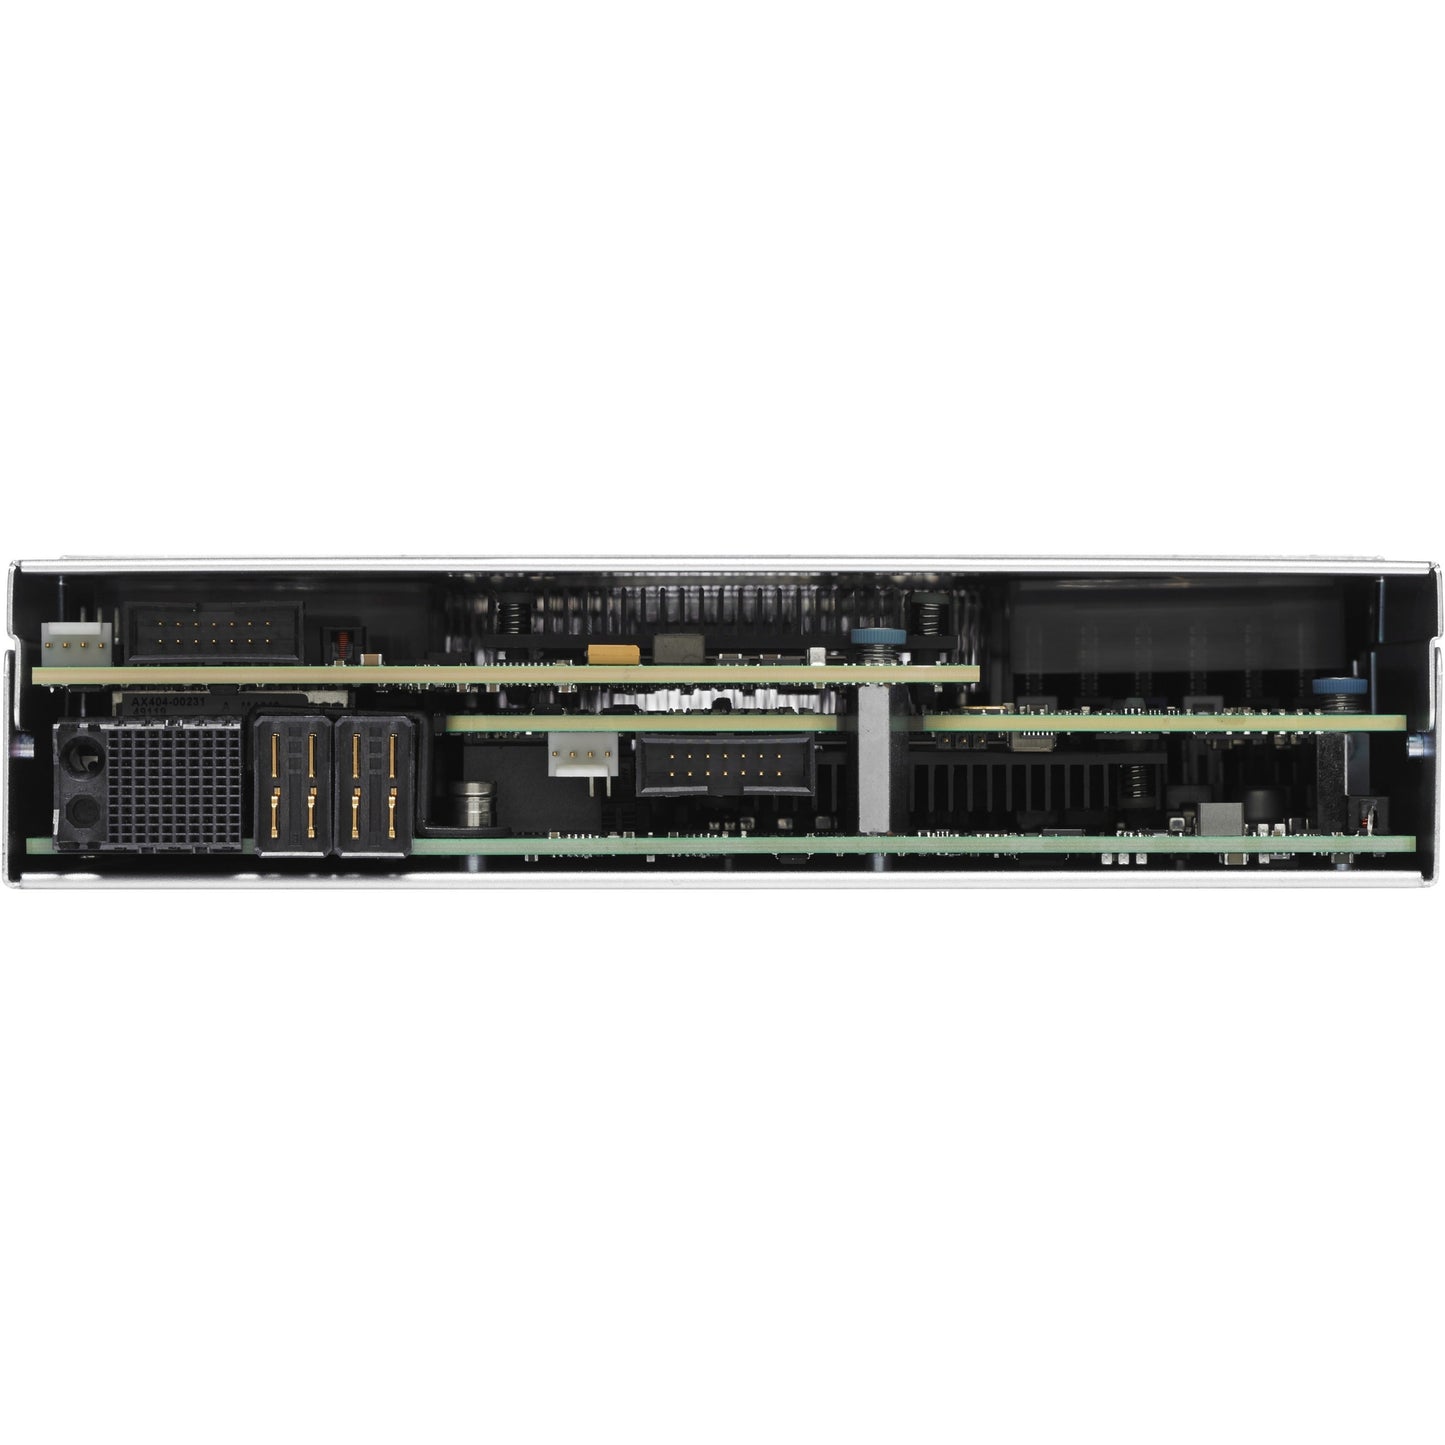 Cisco B200 M4 Blade Server - 2 x Intel Xeon E5-2660 v3 2.60 GHz - 256 GB RAM - Serial Attached SCSI (SAS) Serial ATA Controller